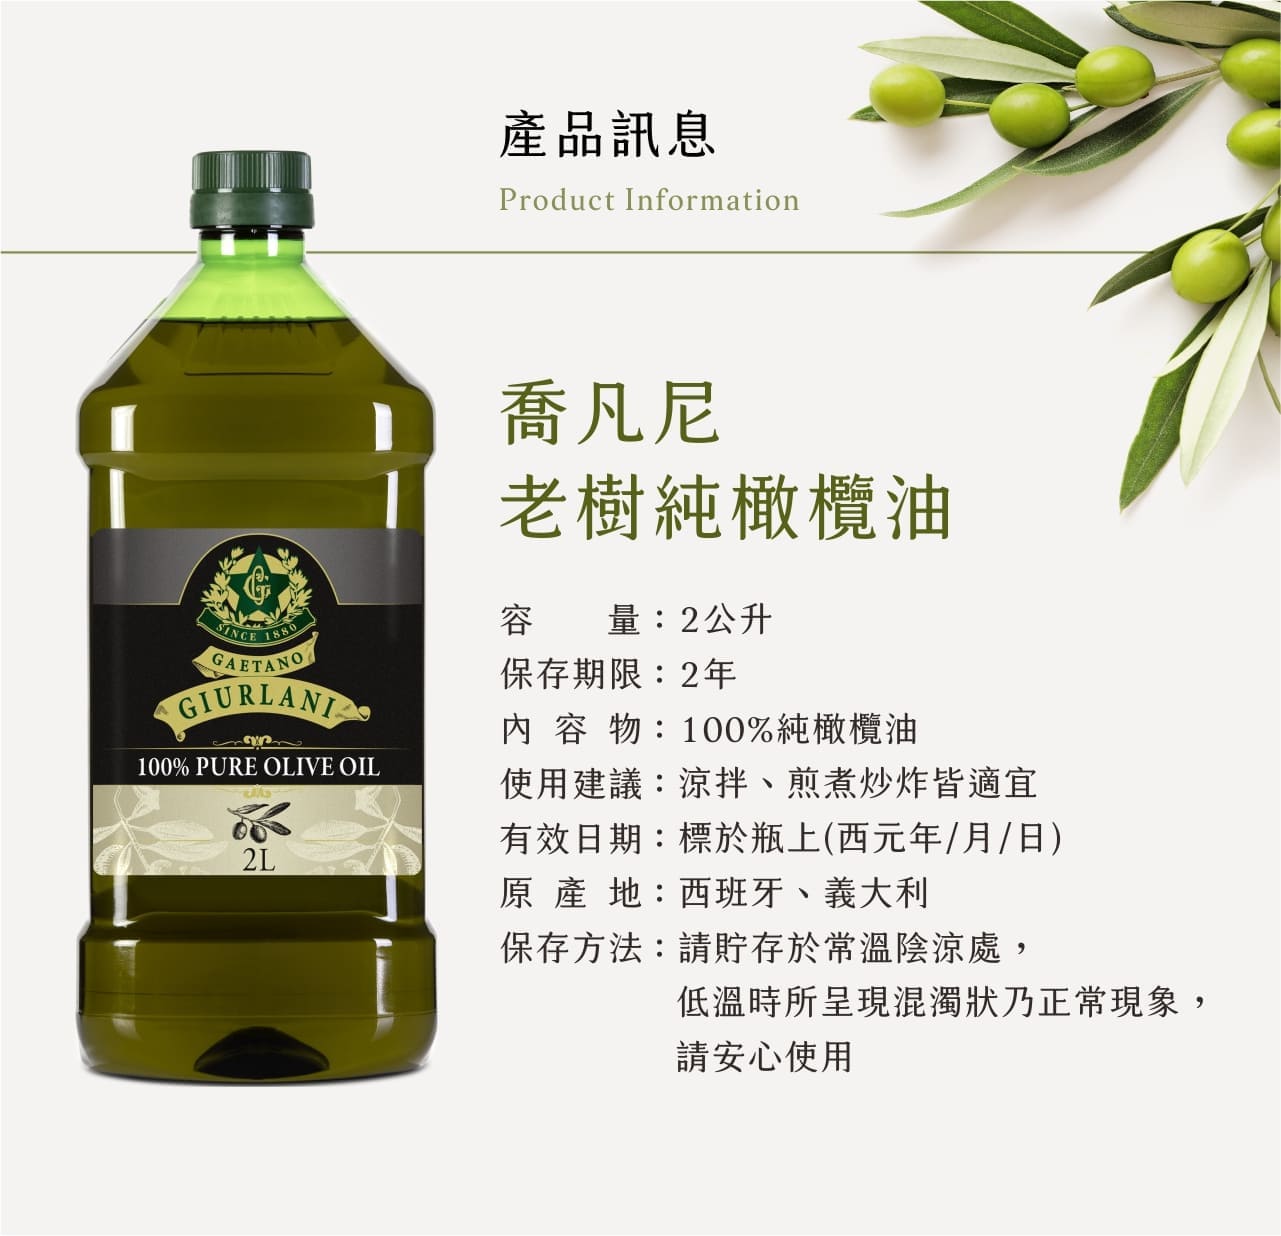 喬凡尼老樹純橄欖油產品規格